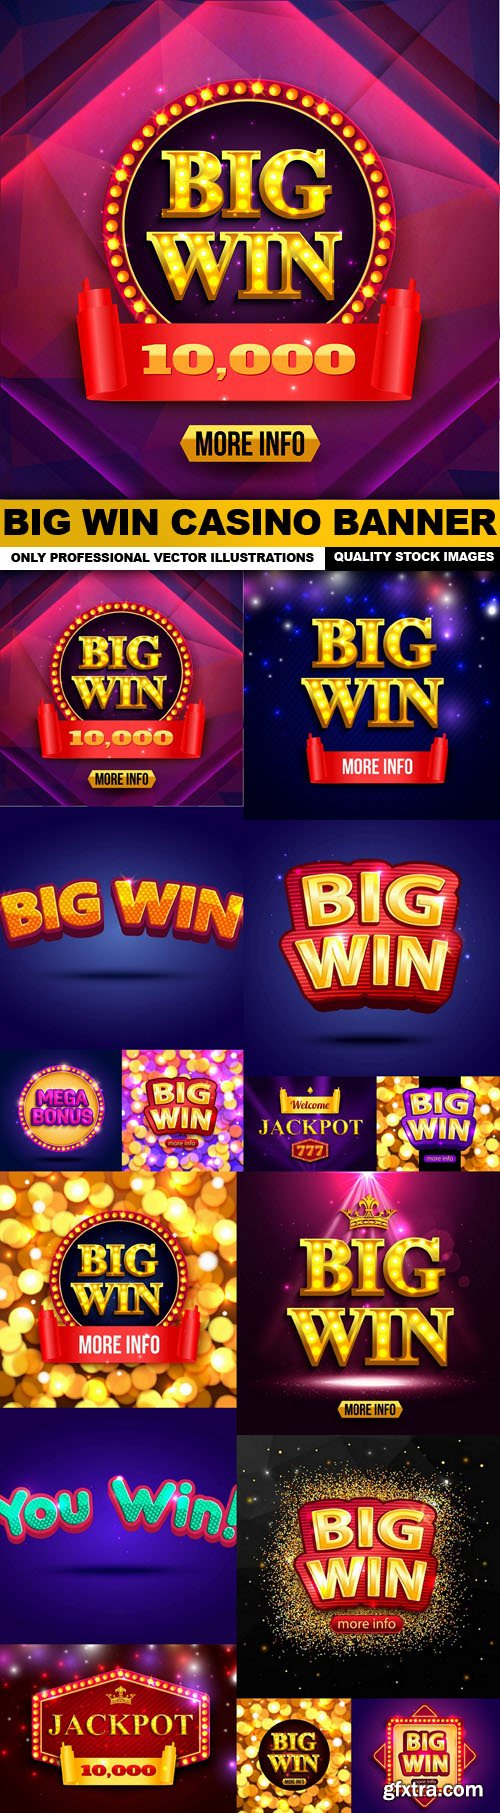 Big Win Casino Banner - 15 Vector